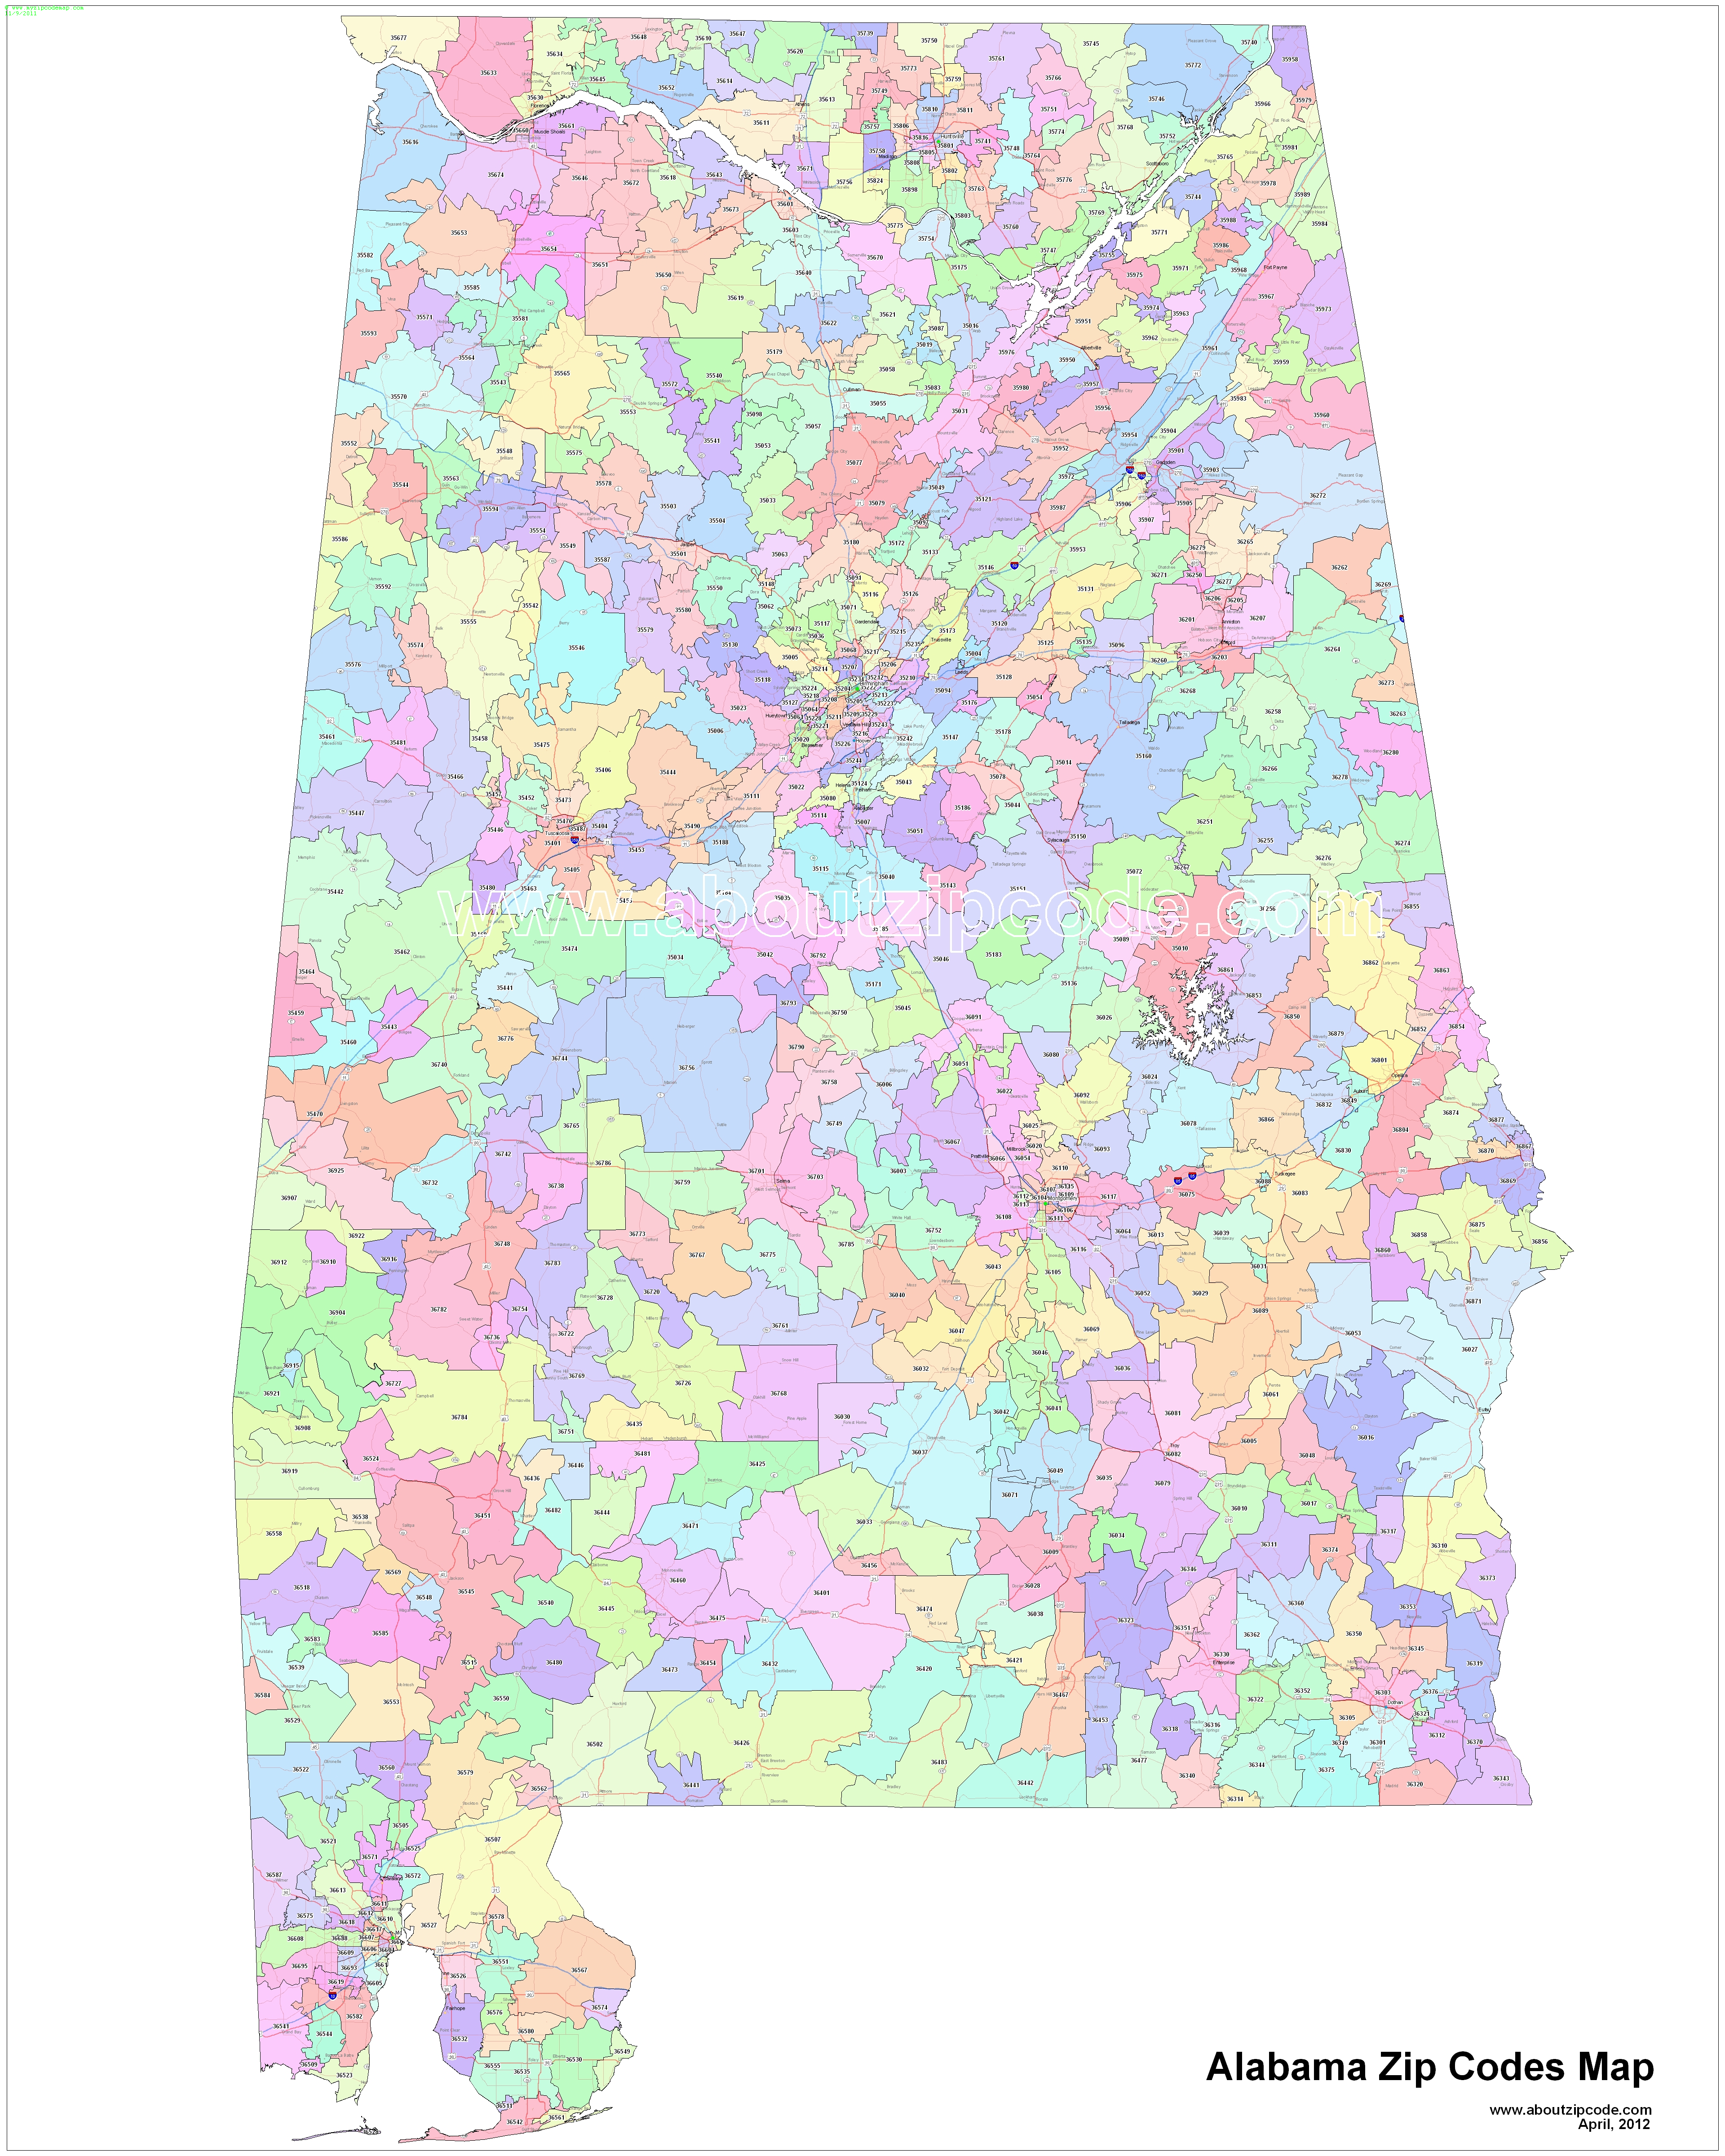 athens al zip code map Alabama Zip Code Maps Free Alabama Zip Code Maps athens al zip code map